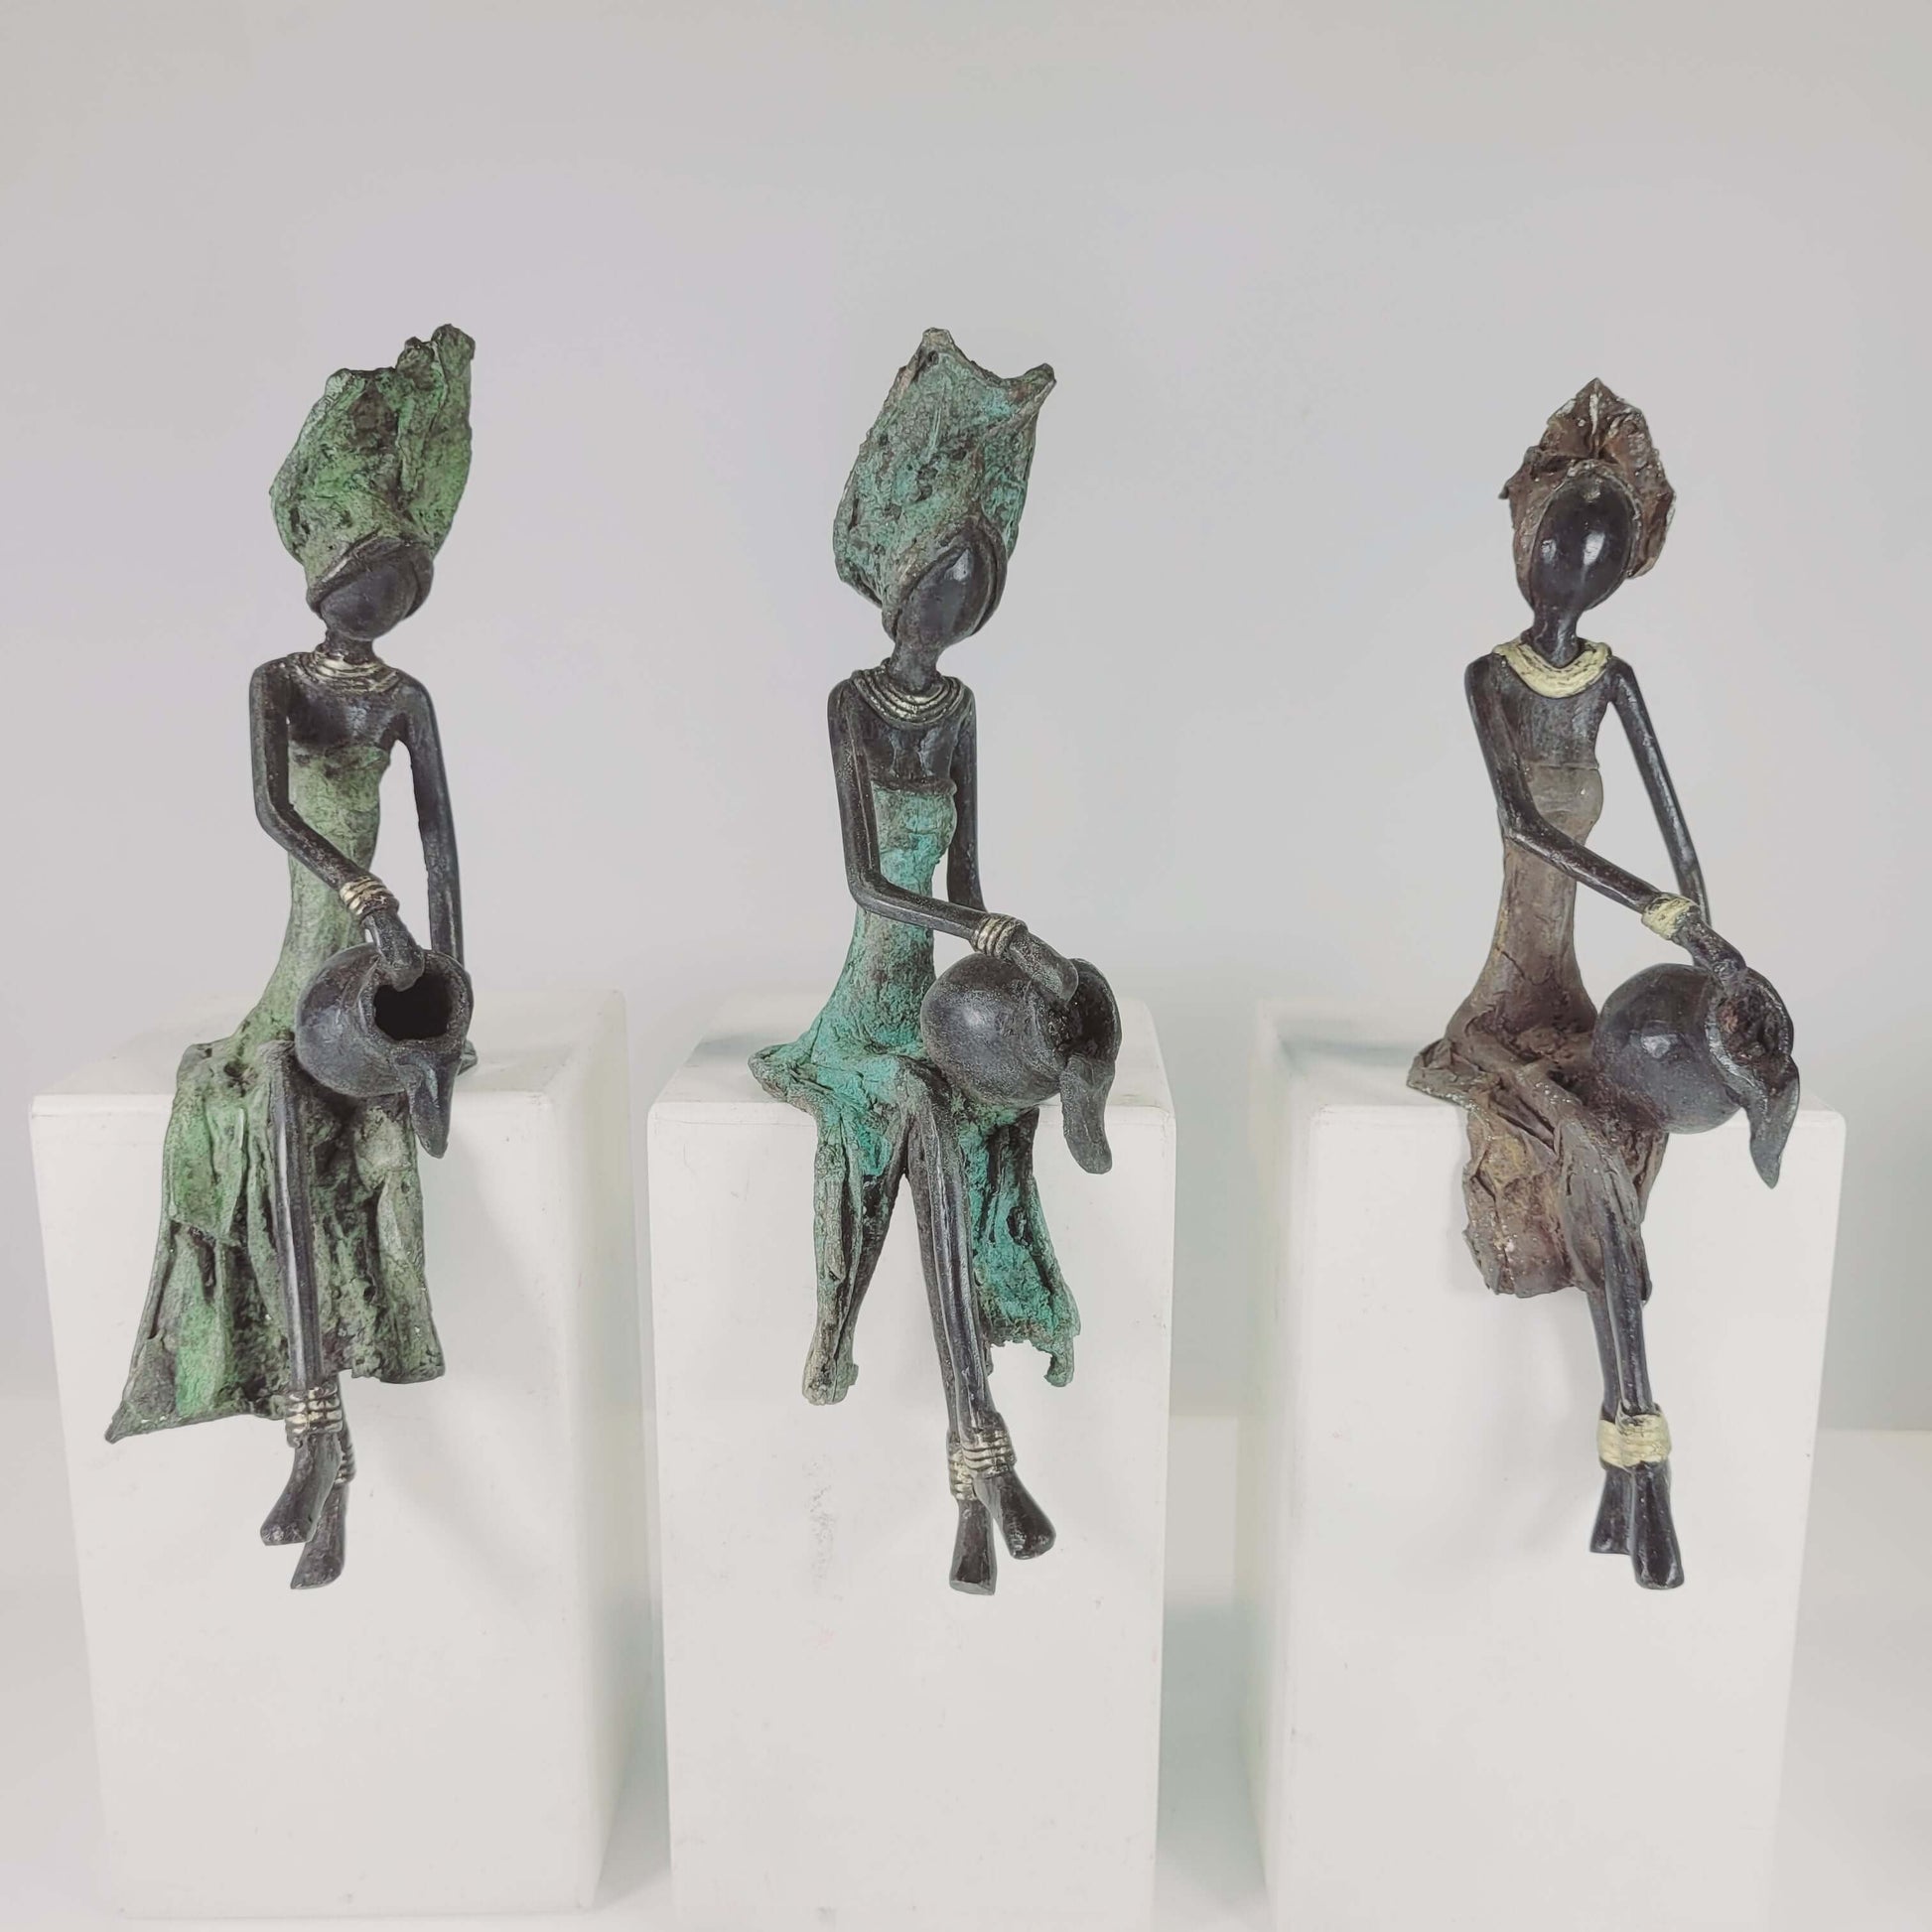 Bronze-Skulptur "Sitzende Frau" by Issouf | 23 cm | verschiedene Motive und Farben